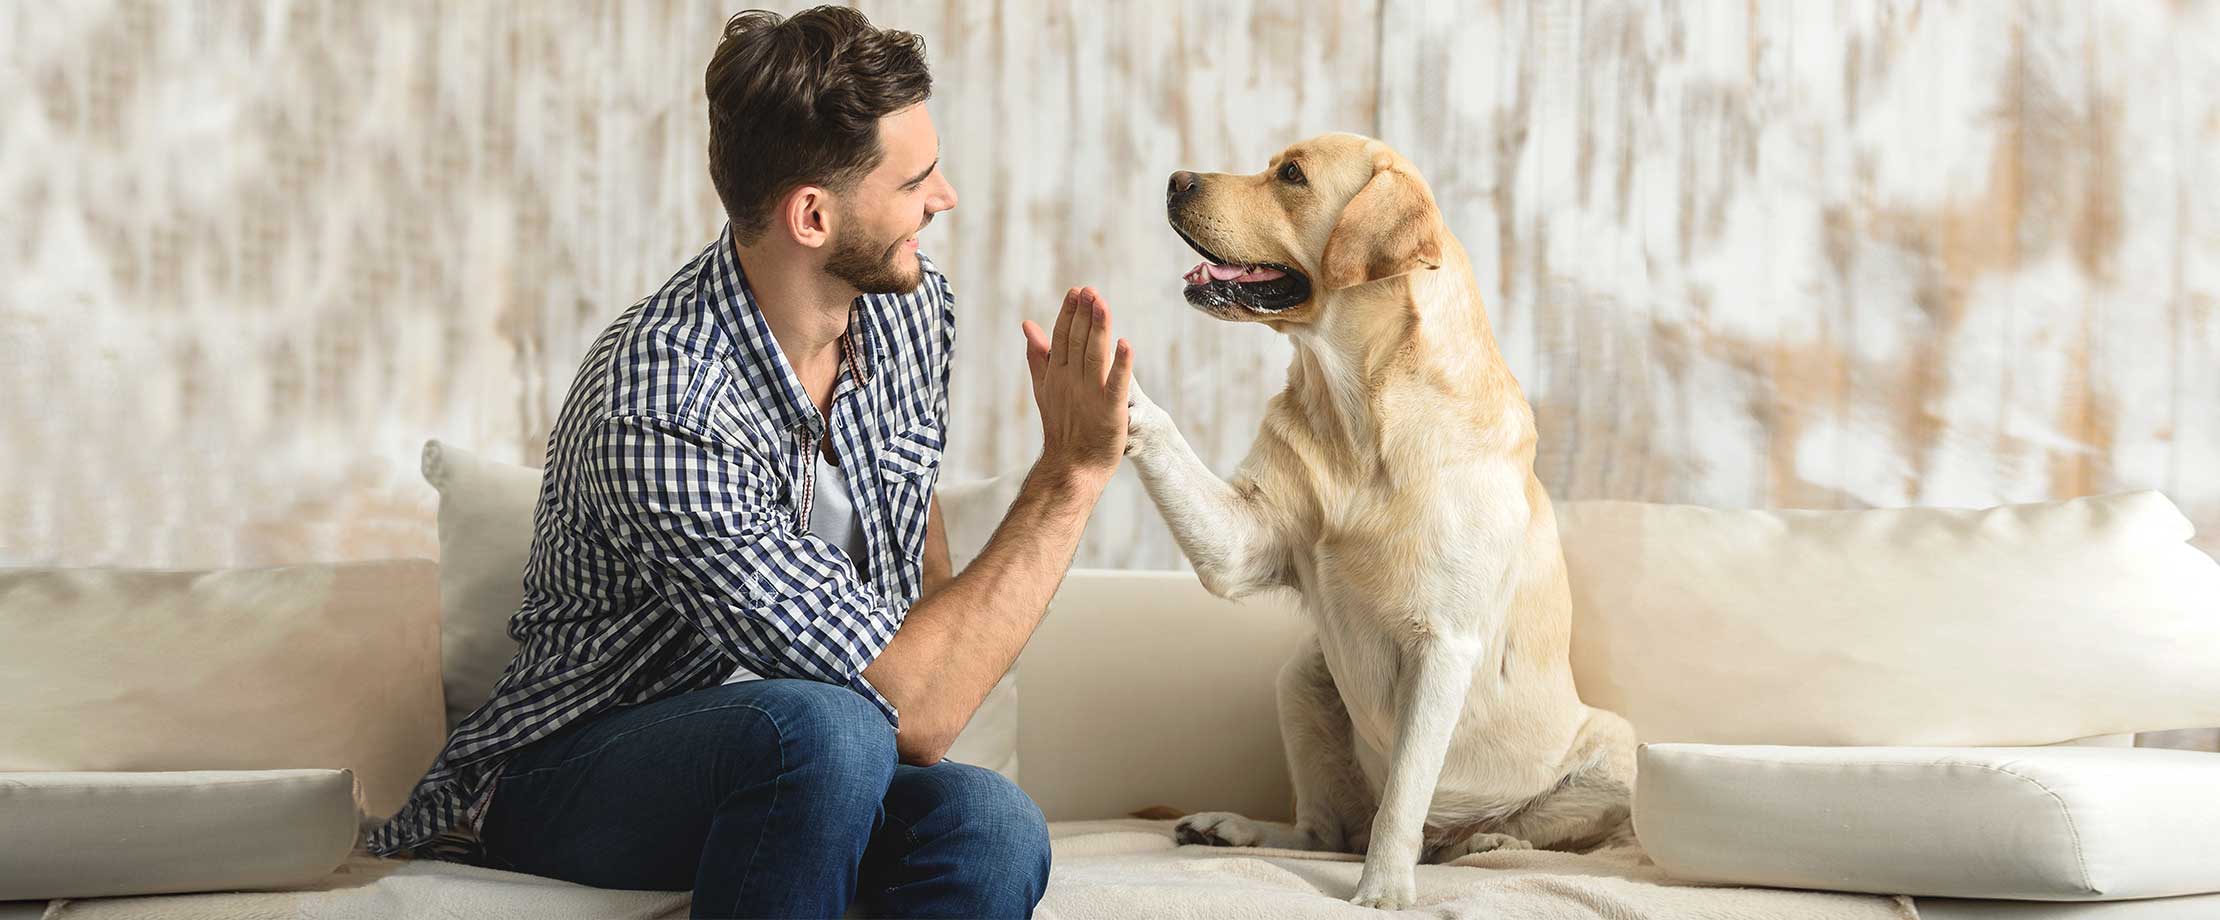 Ein Mann in einem karierten Hemd und ein Hund sitzen auf einer Couch und geben sich ein High-Five.